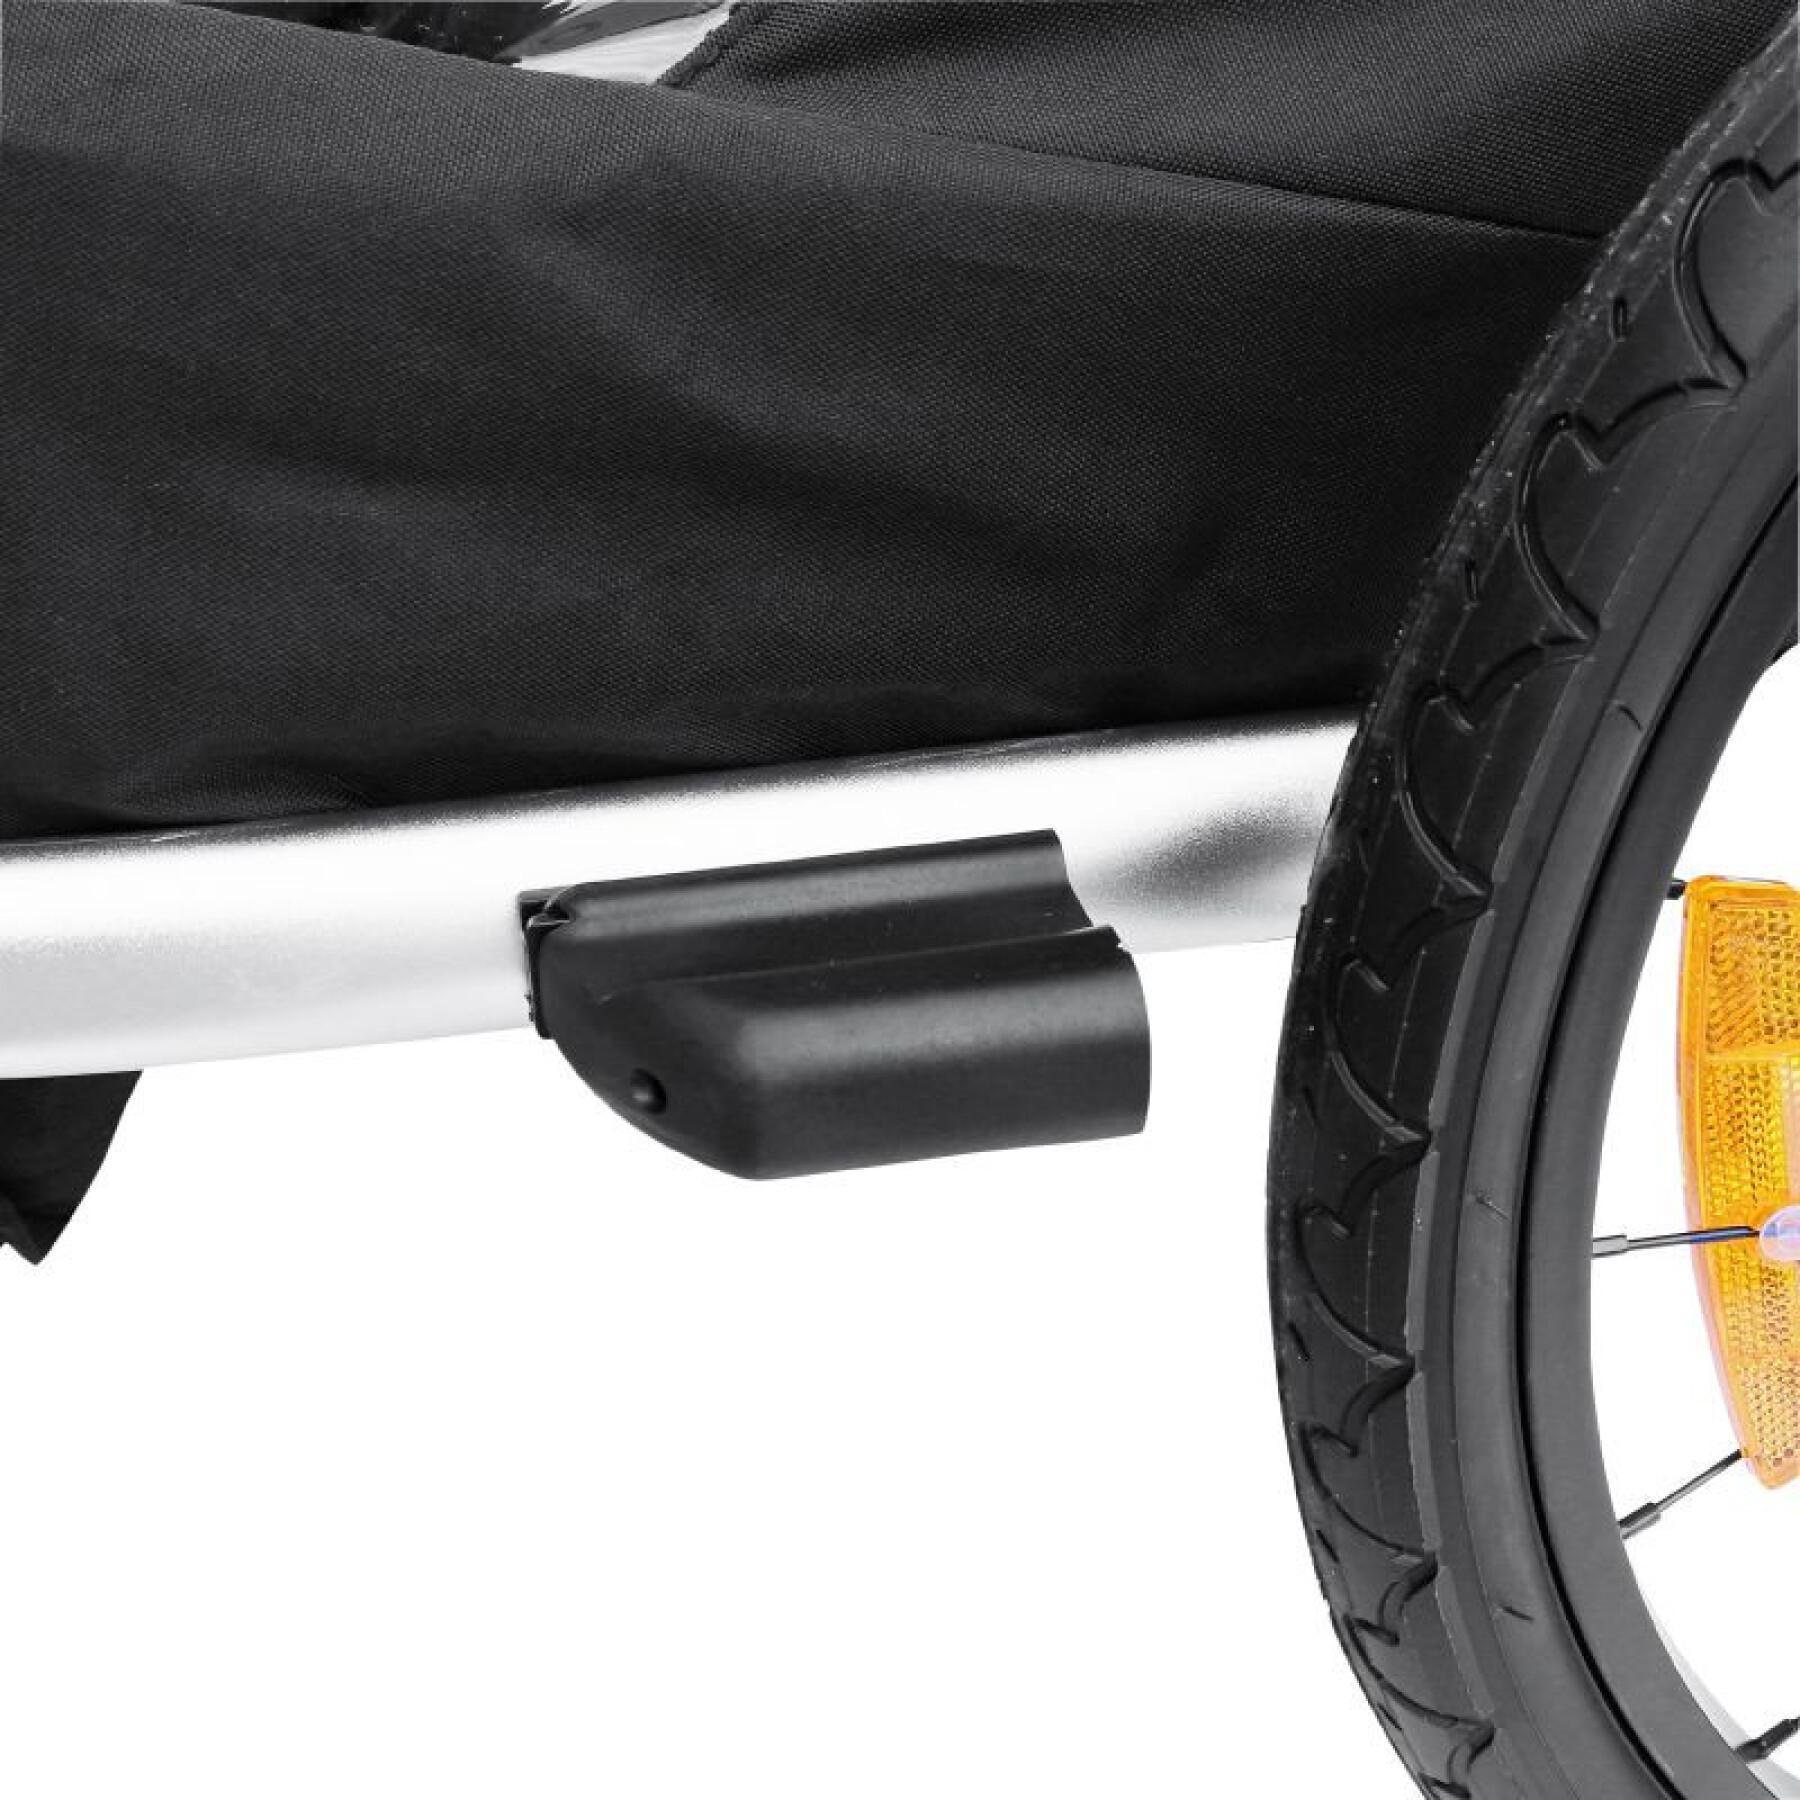 Objęta ochroną 2-osobowa aluminiowa przyczepka rowerowa maxi pushchair z mocowaniem do osi koła - dostarczana z przednim kołem i uchwytem hamulca - składana bez użycia narzędzi P2R 36 Kg